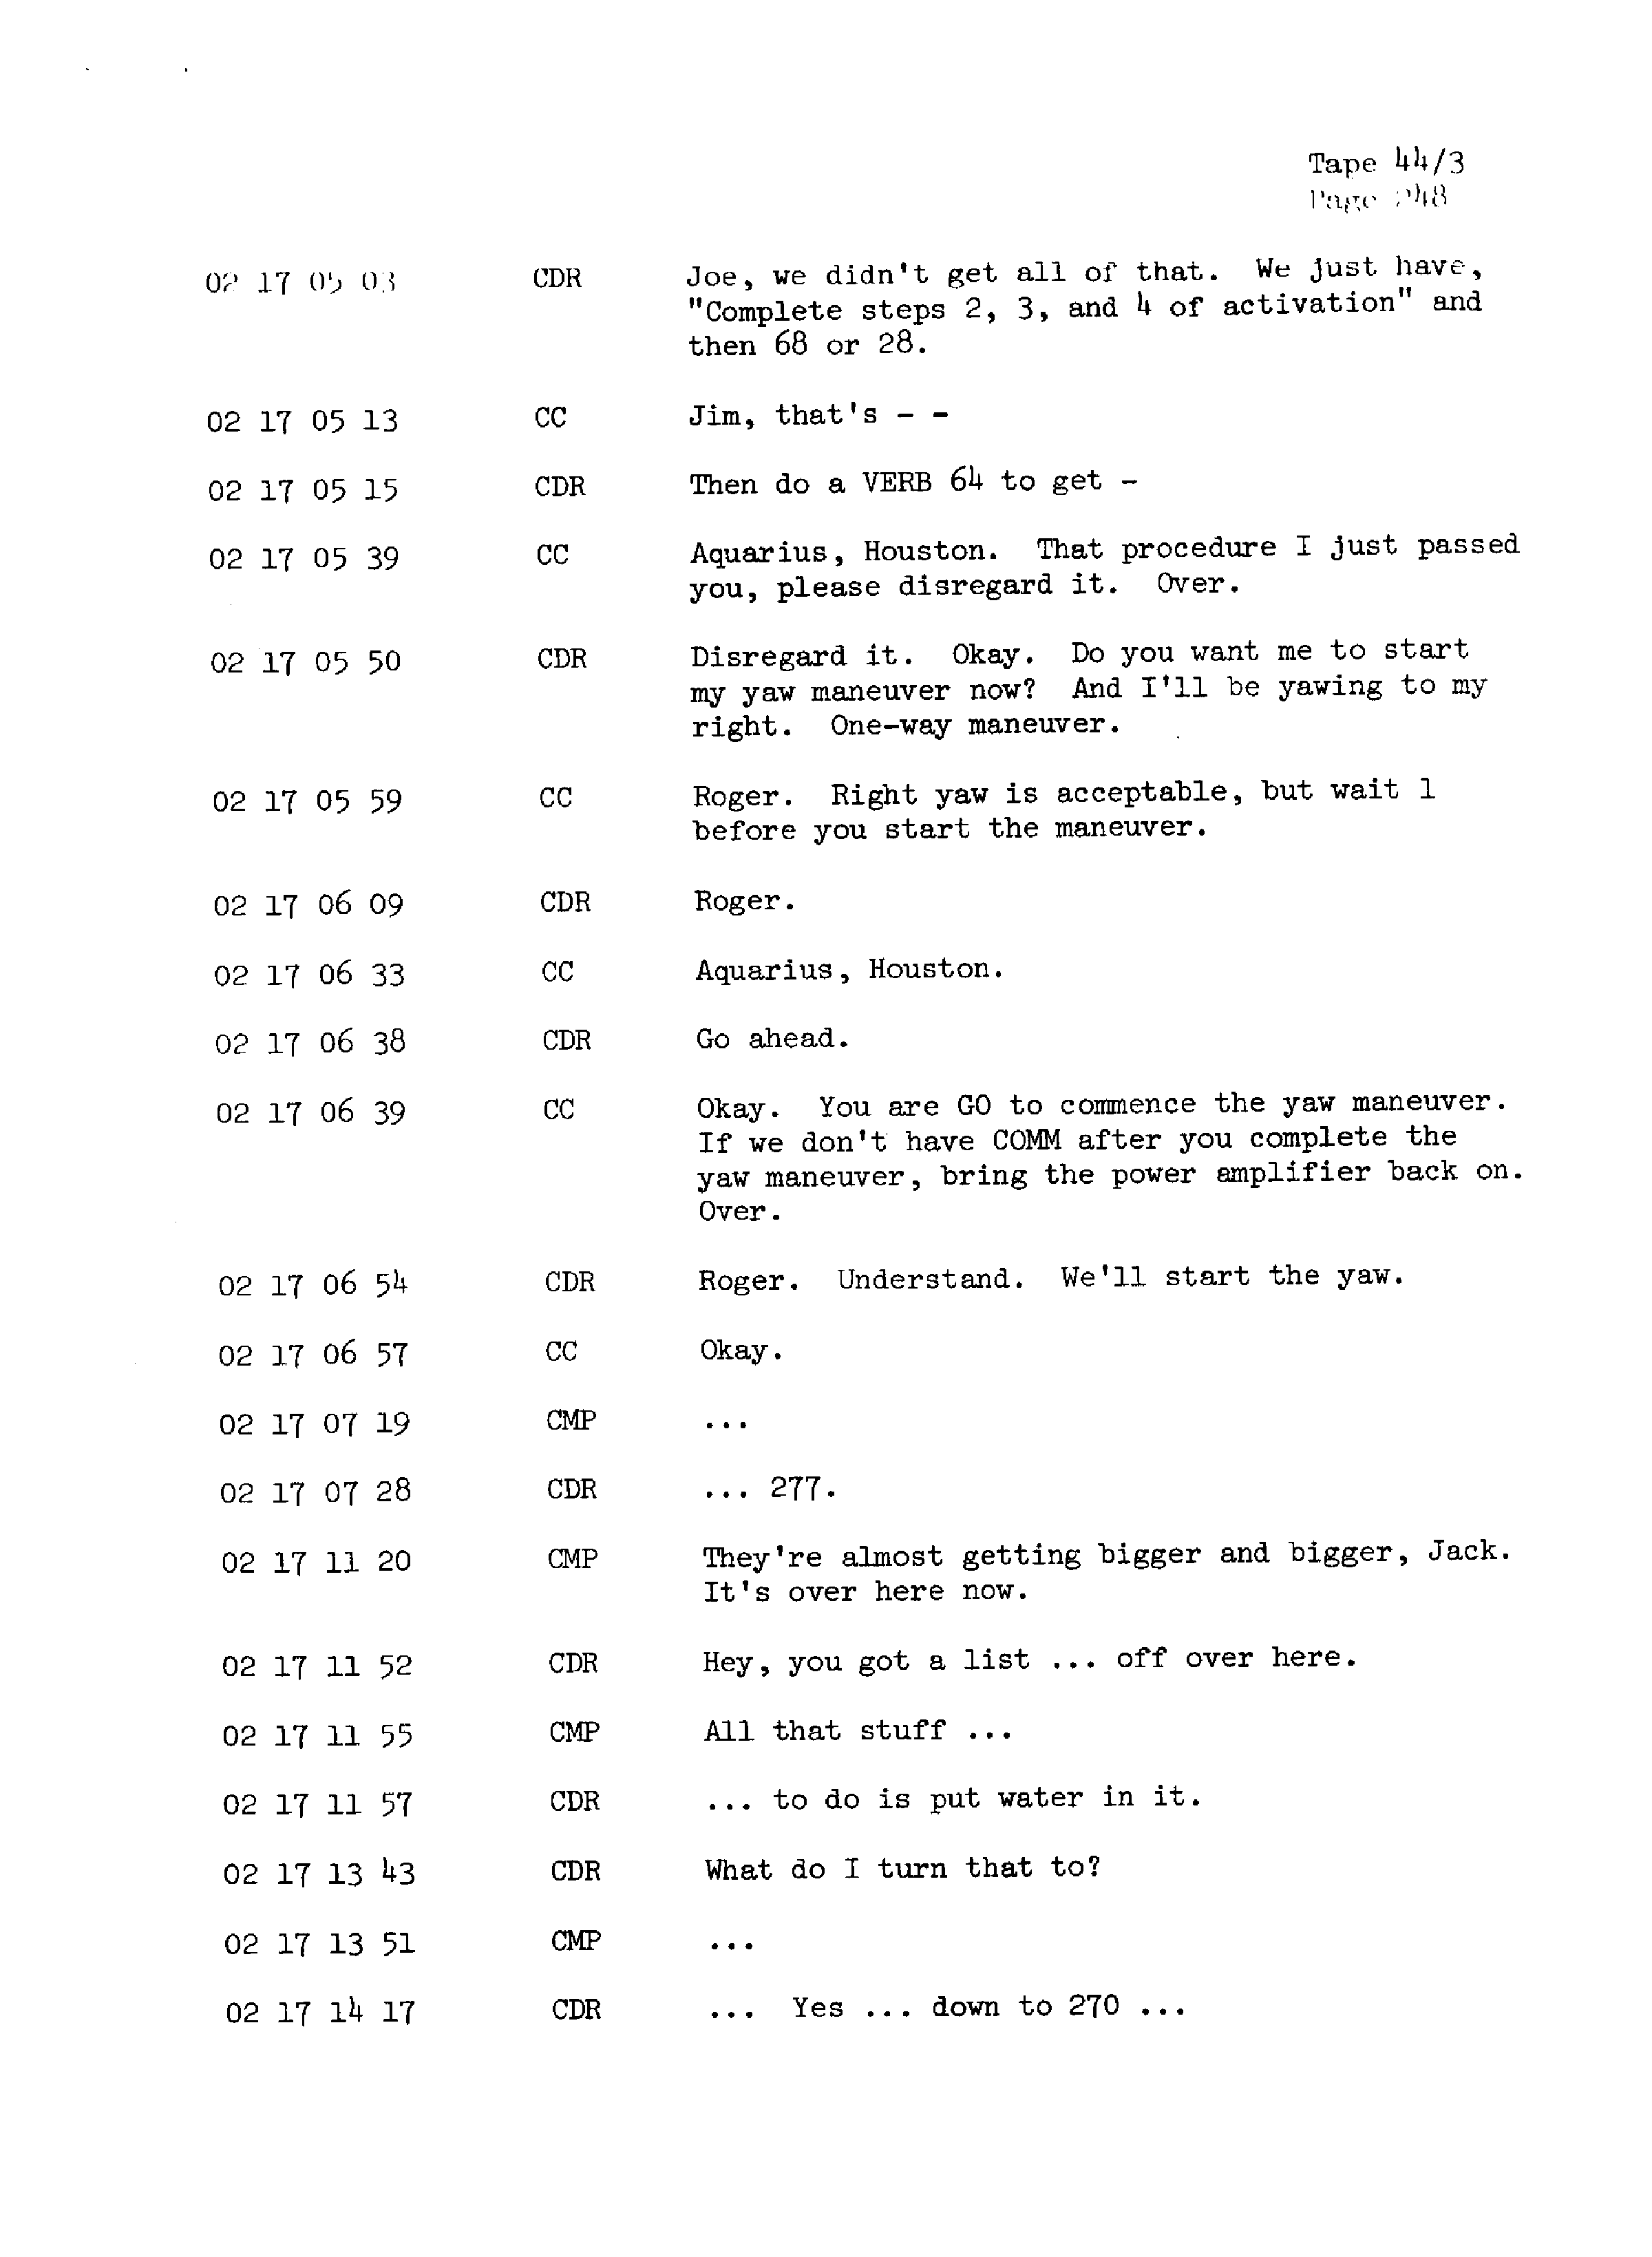 Page 255 of Apollo 13’s original transcript